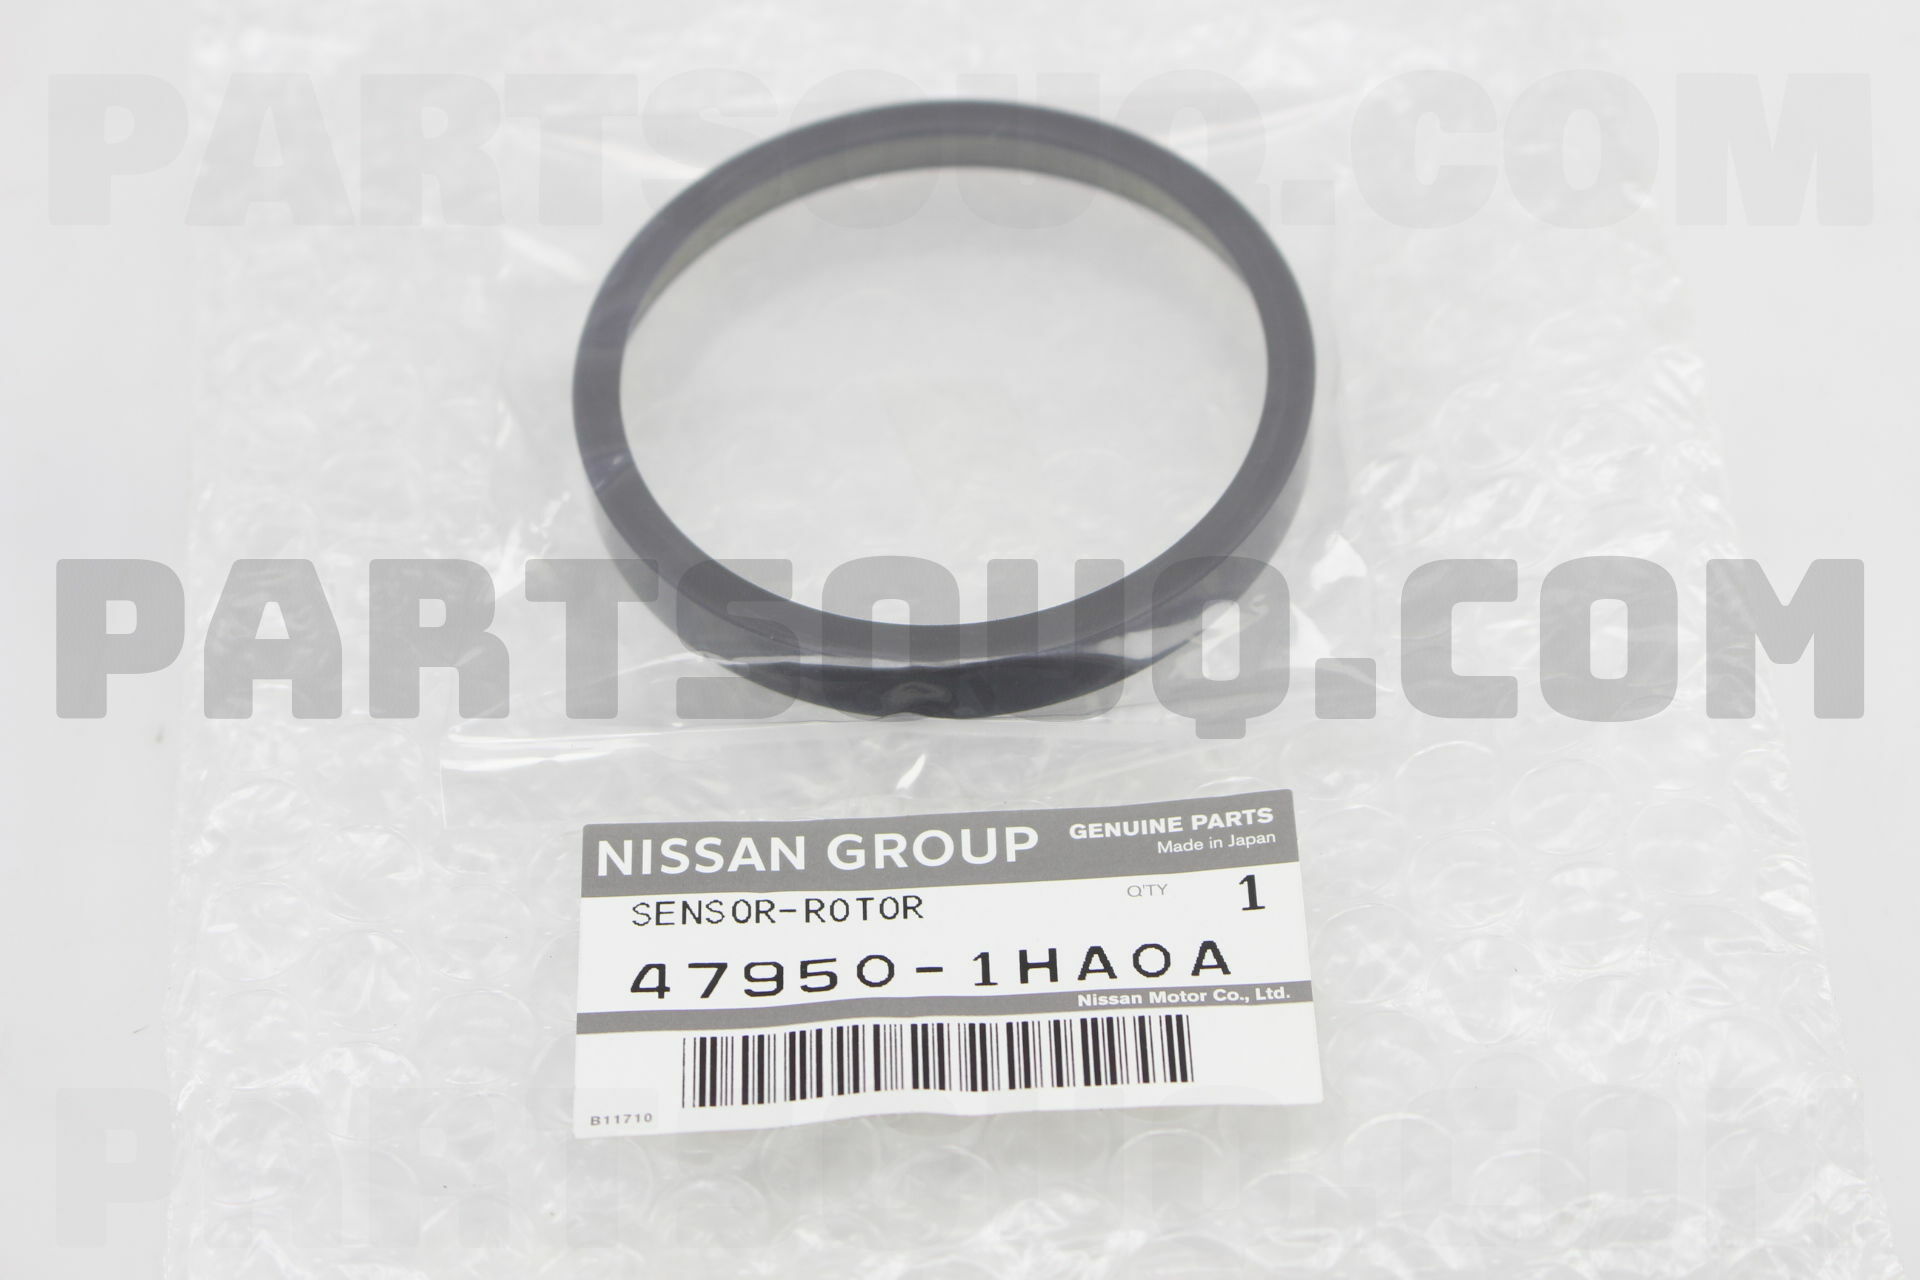 Sensor Rotor Antiskid Rear ha0a Nissan Parts Partsouq